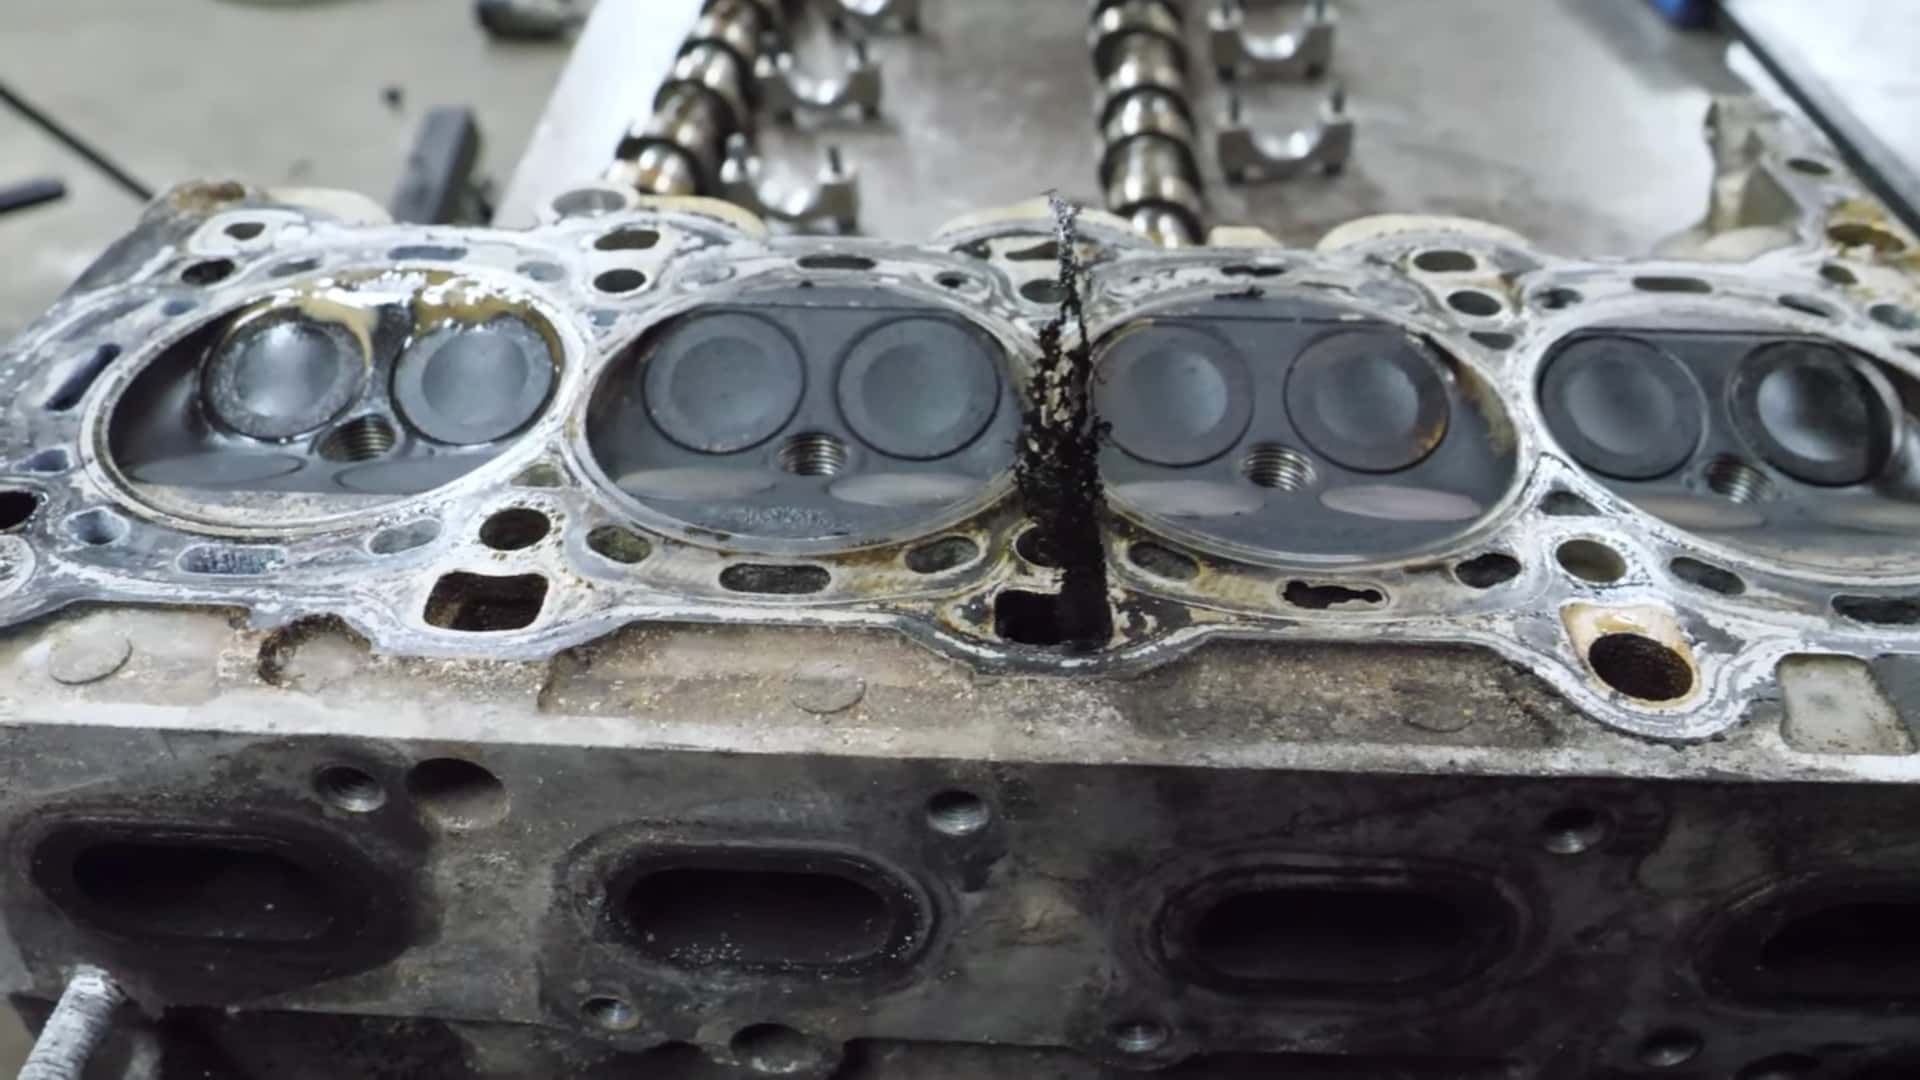 Der Teardown des Chevy-Turbomotors zeigt, warum sich Kühlmittel und Öl niemals vermischen sollten